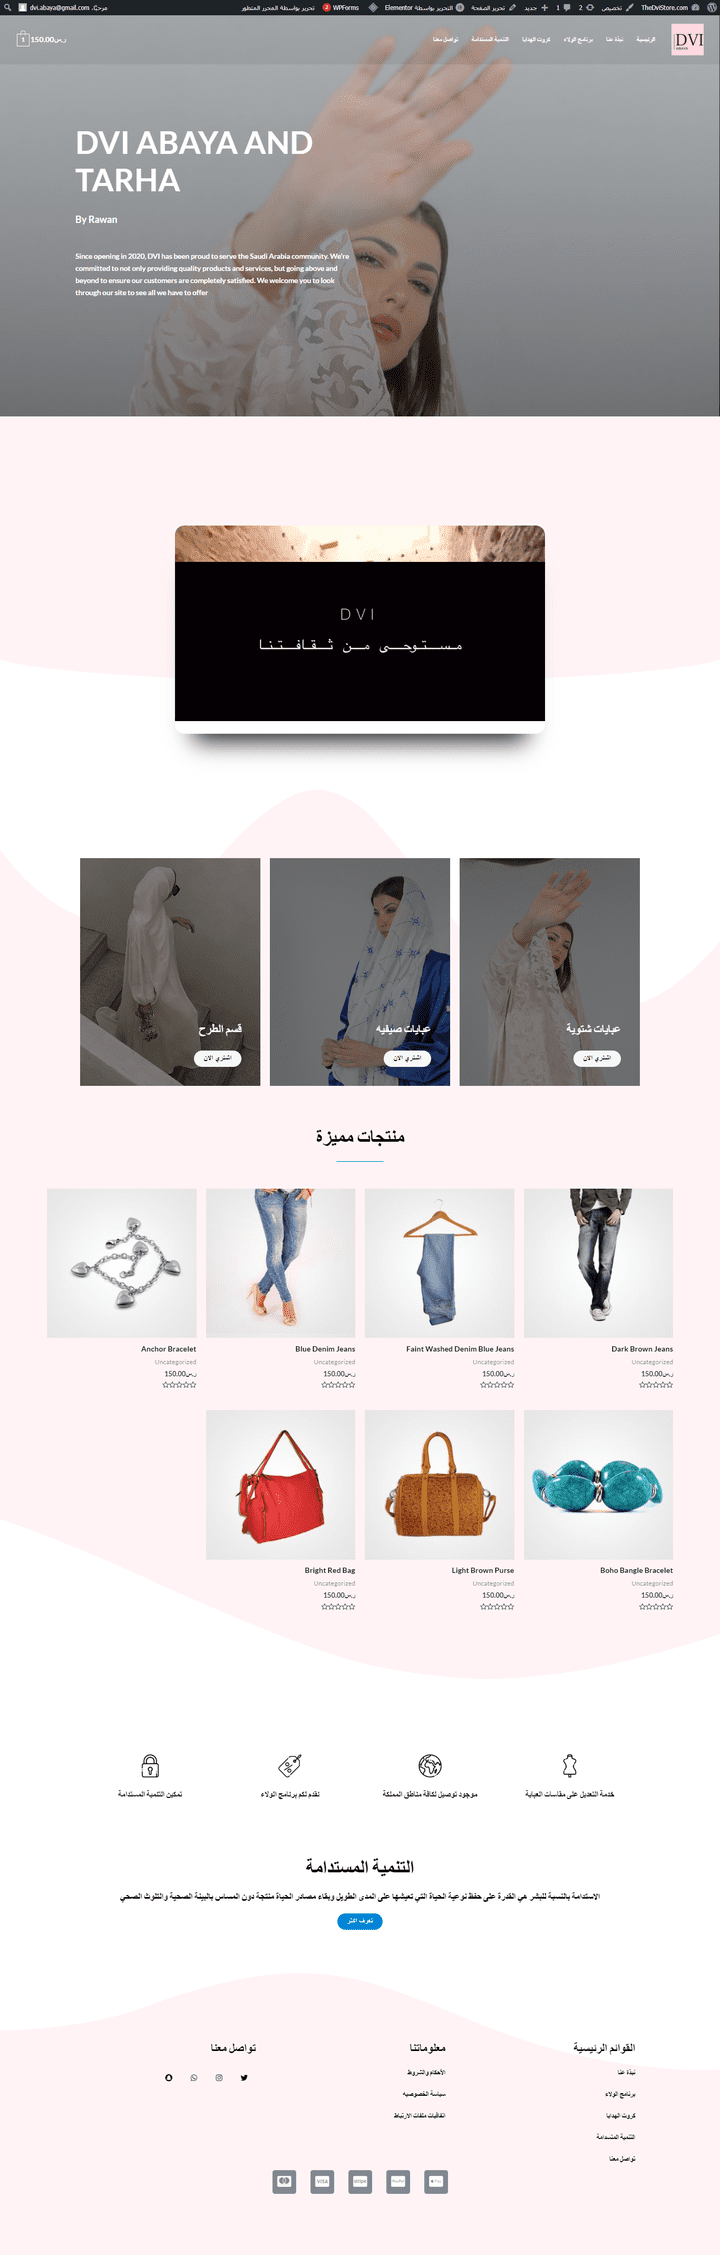 اخر اعمالي في تصميم المواقع الالكترونية  الموقع لشركة ملابس متخصصة في بيع العبايات في المملكة العربية السعودية